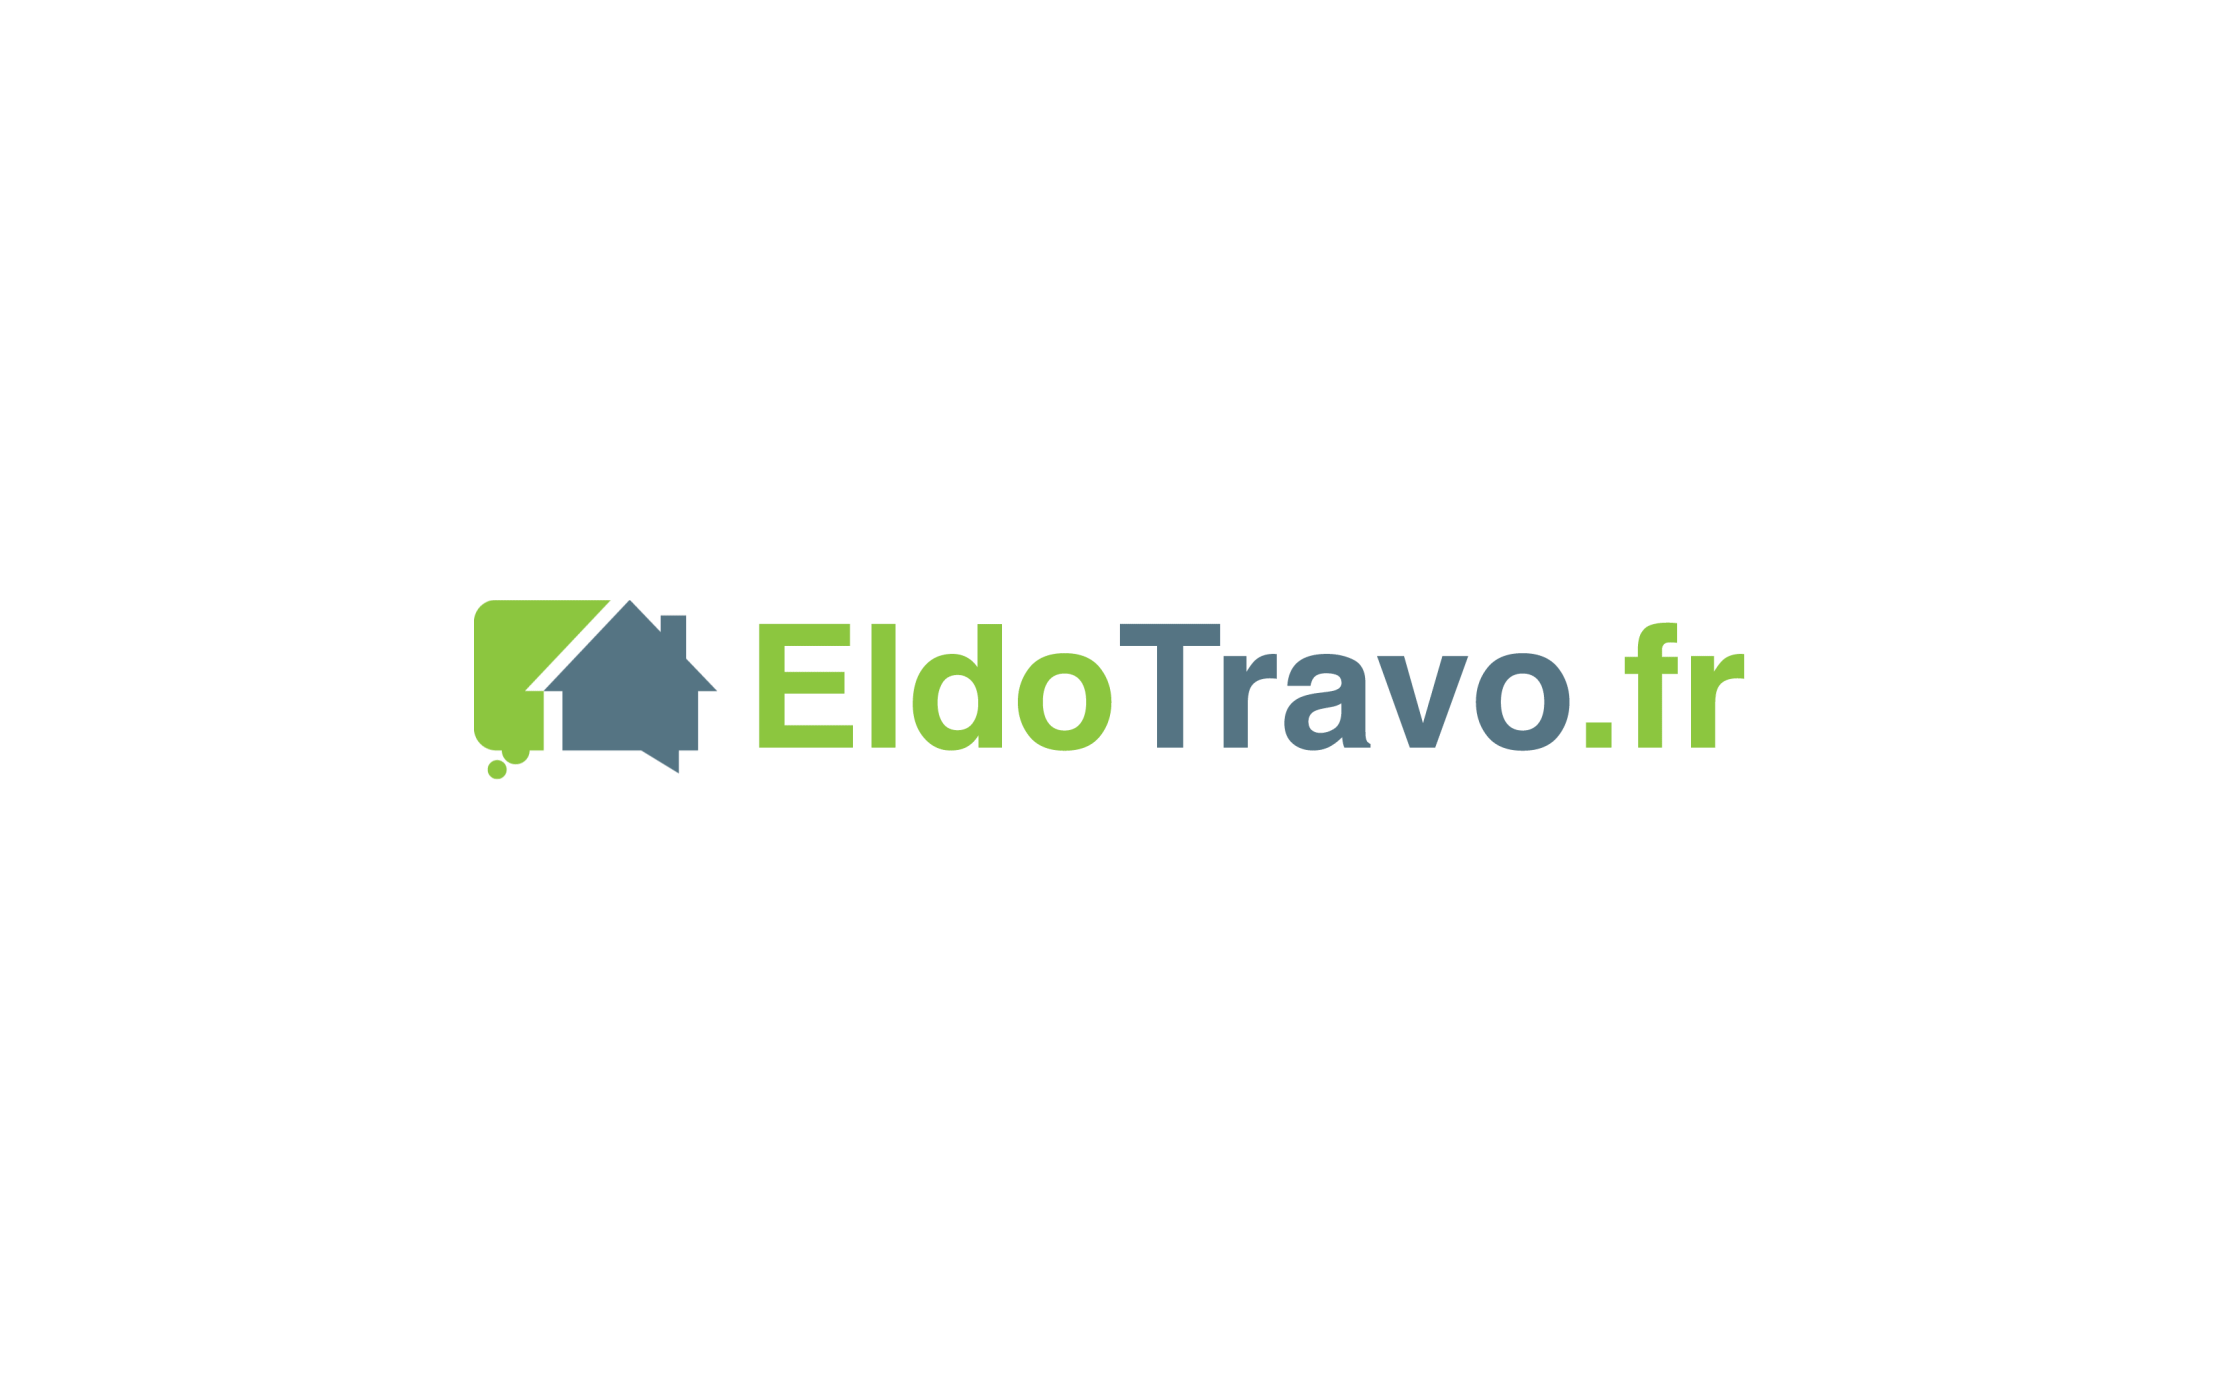 eldotravo devient eldo